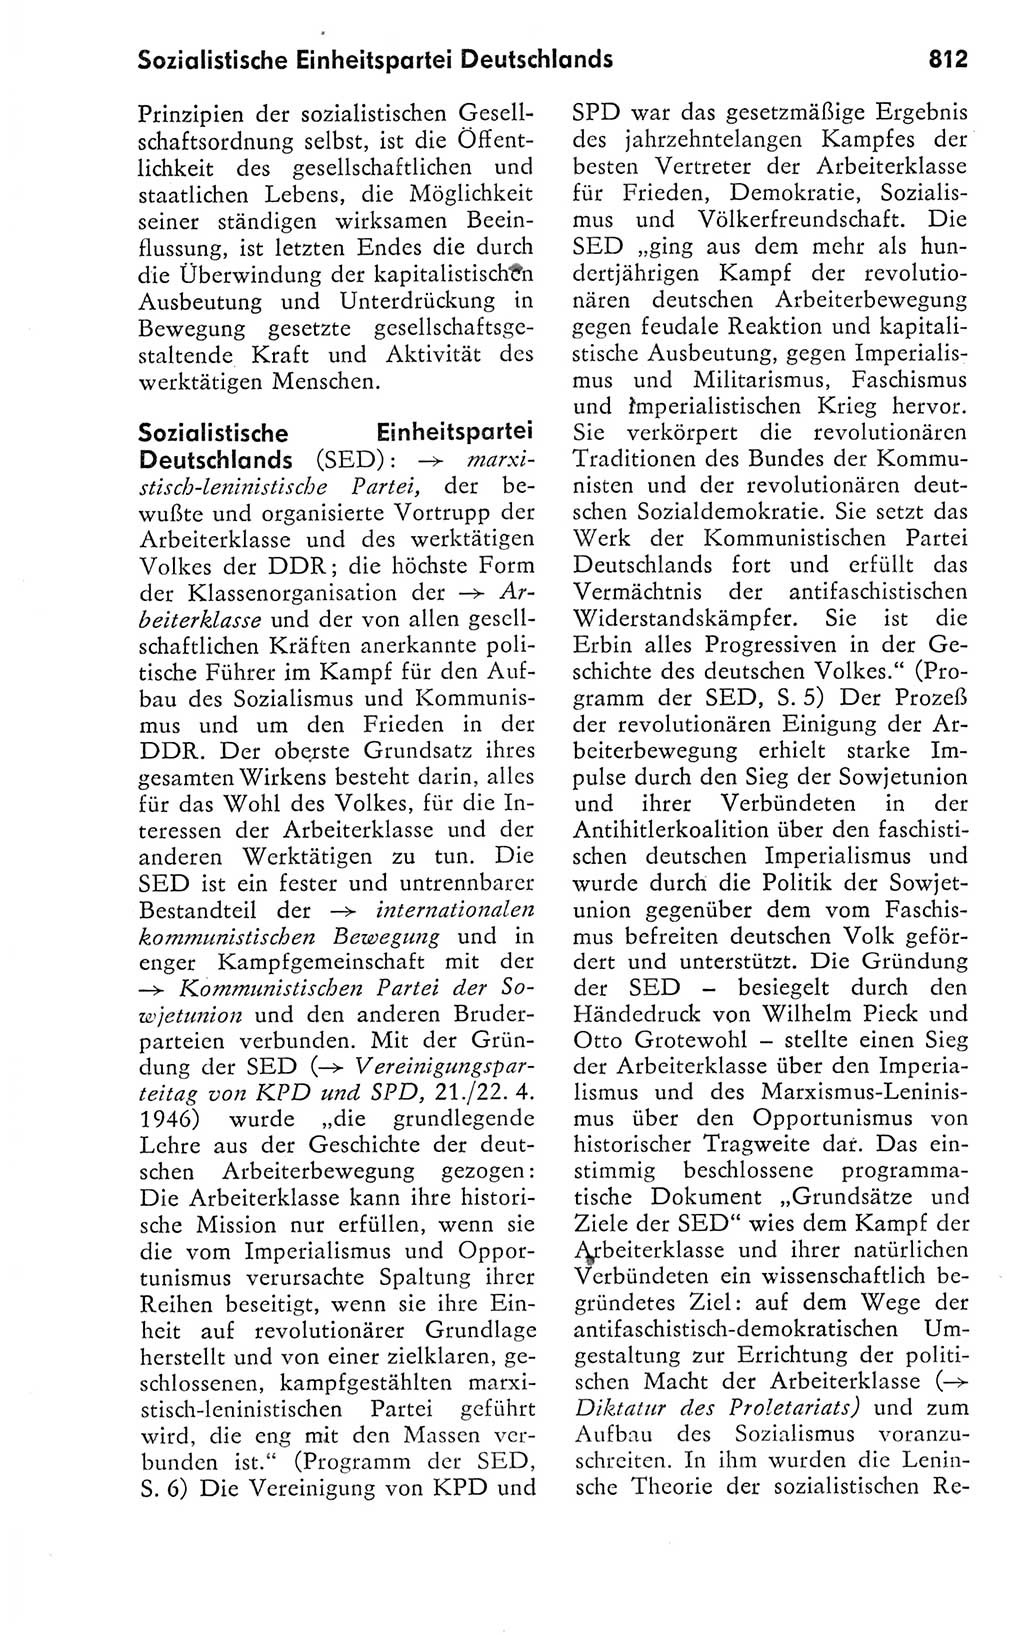 Kleines politisches Wörterbuch [Deutsche Demokratische Republik (DDR)] 1978, Seite 812 (Kl. pol. Wb. DDR 1978, S. 812)